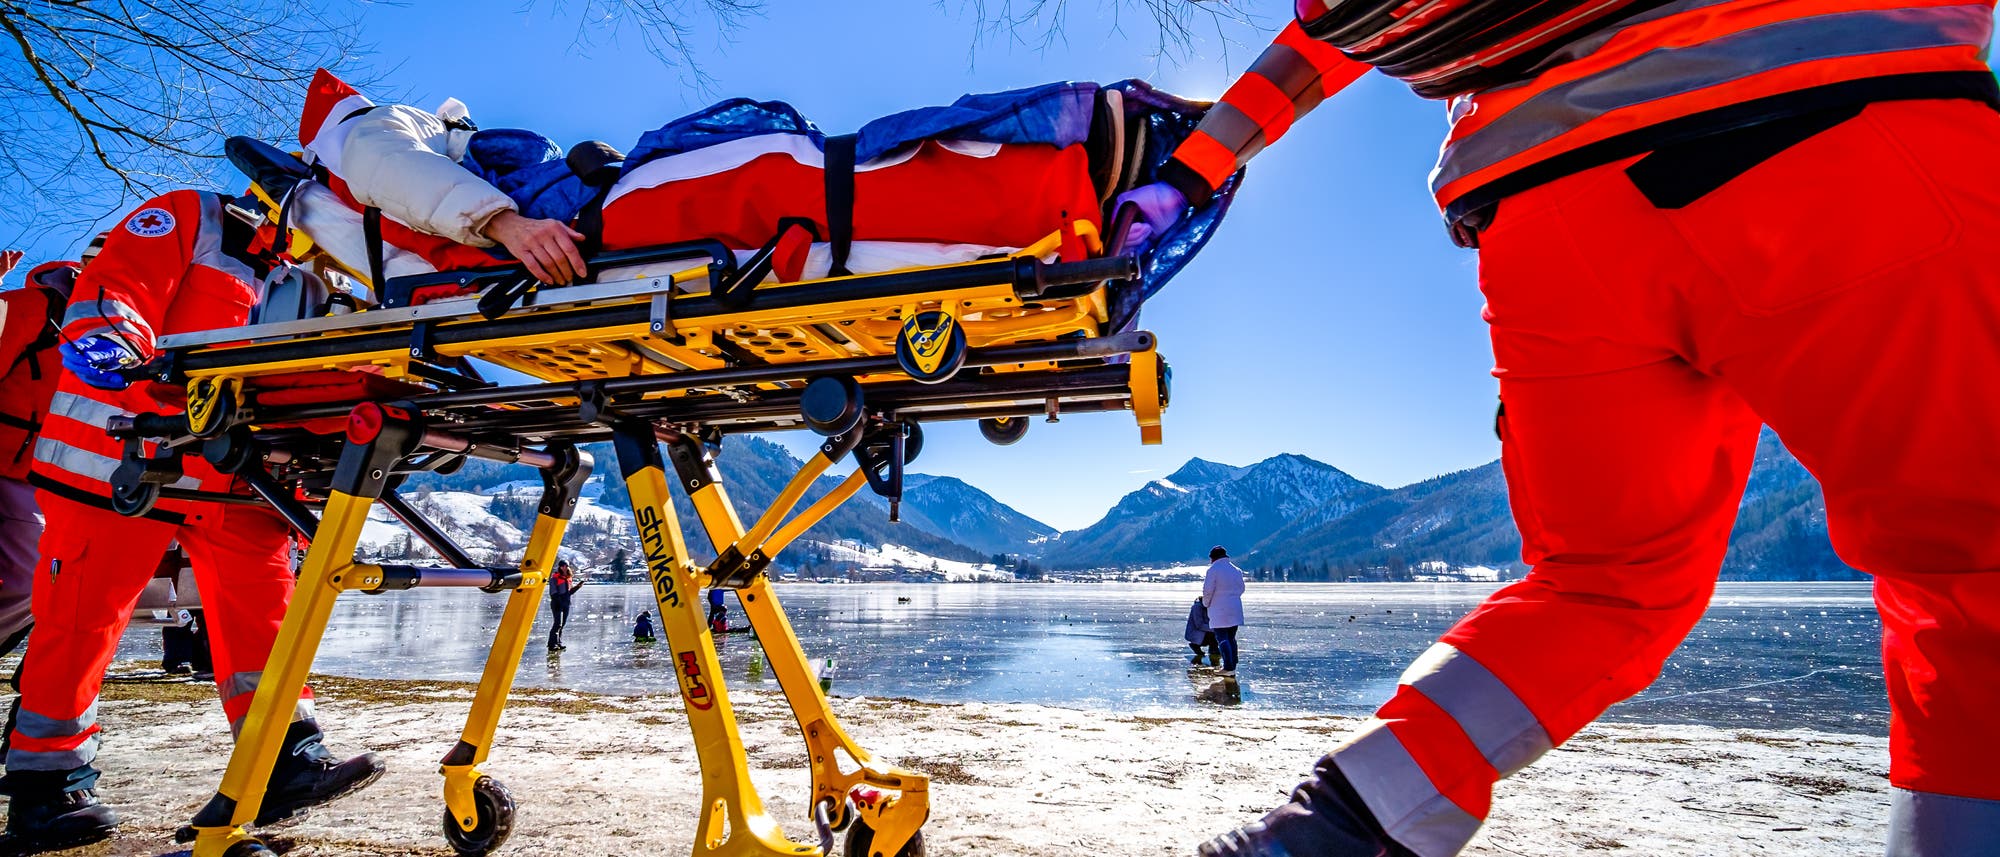 Zwei Sanitäter transportieren eine Person auf einer Trage an einem zugefrorenen See.